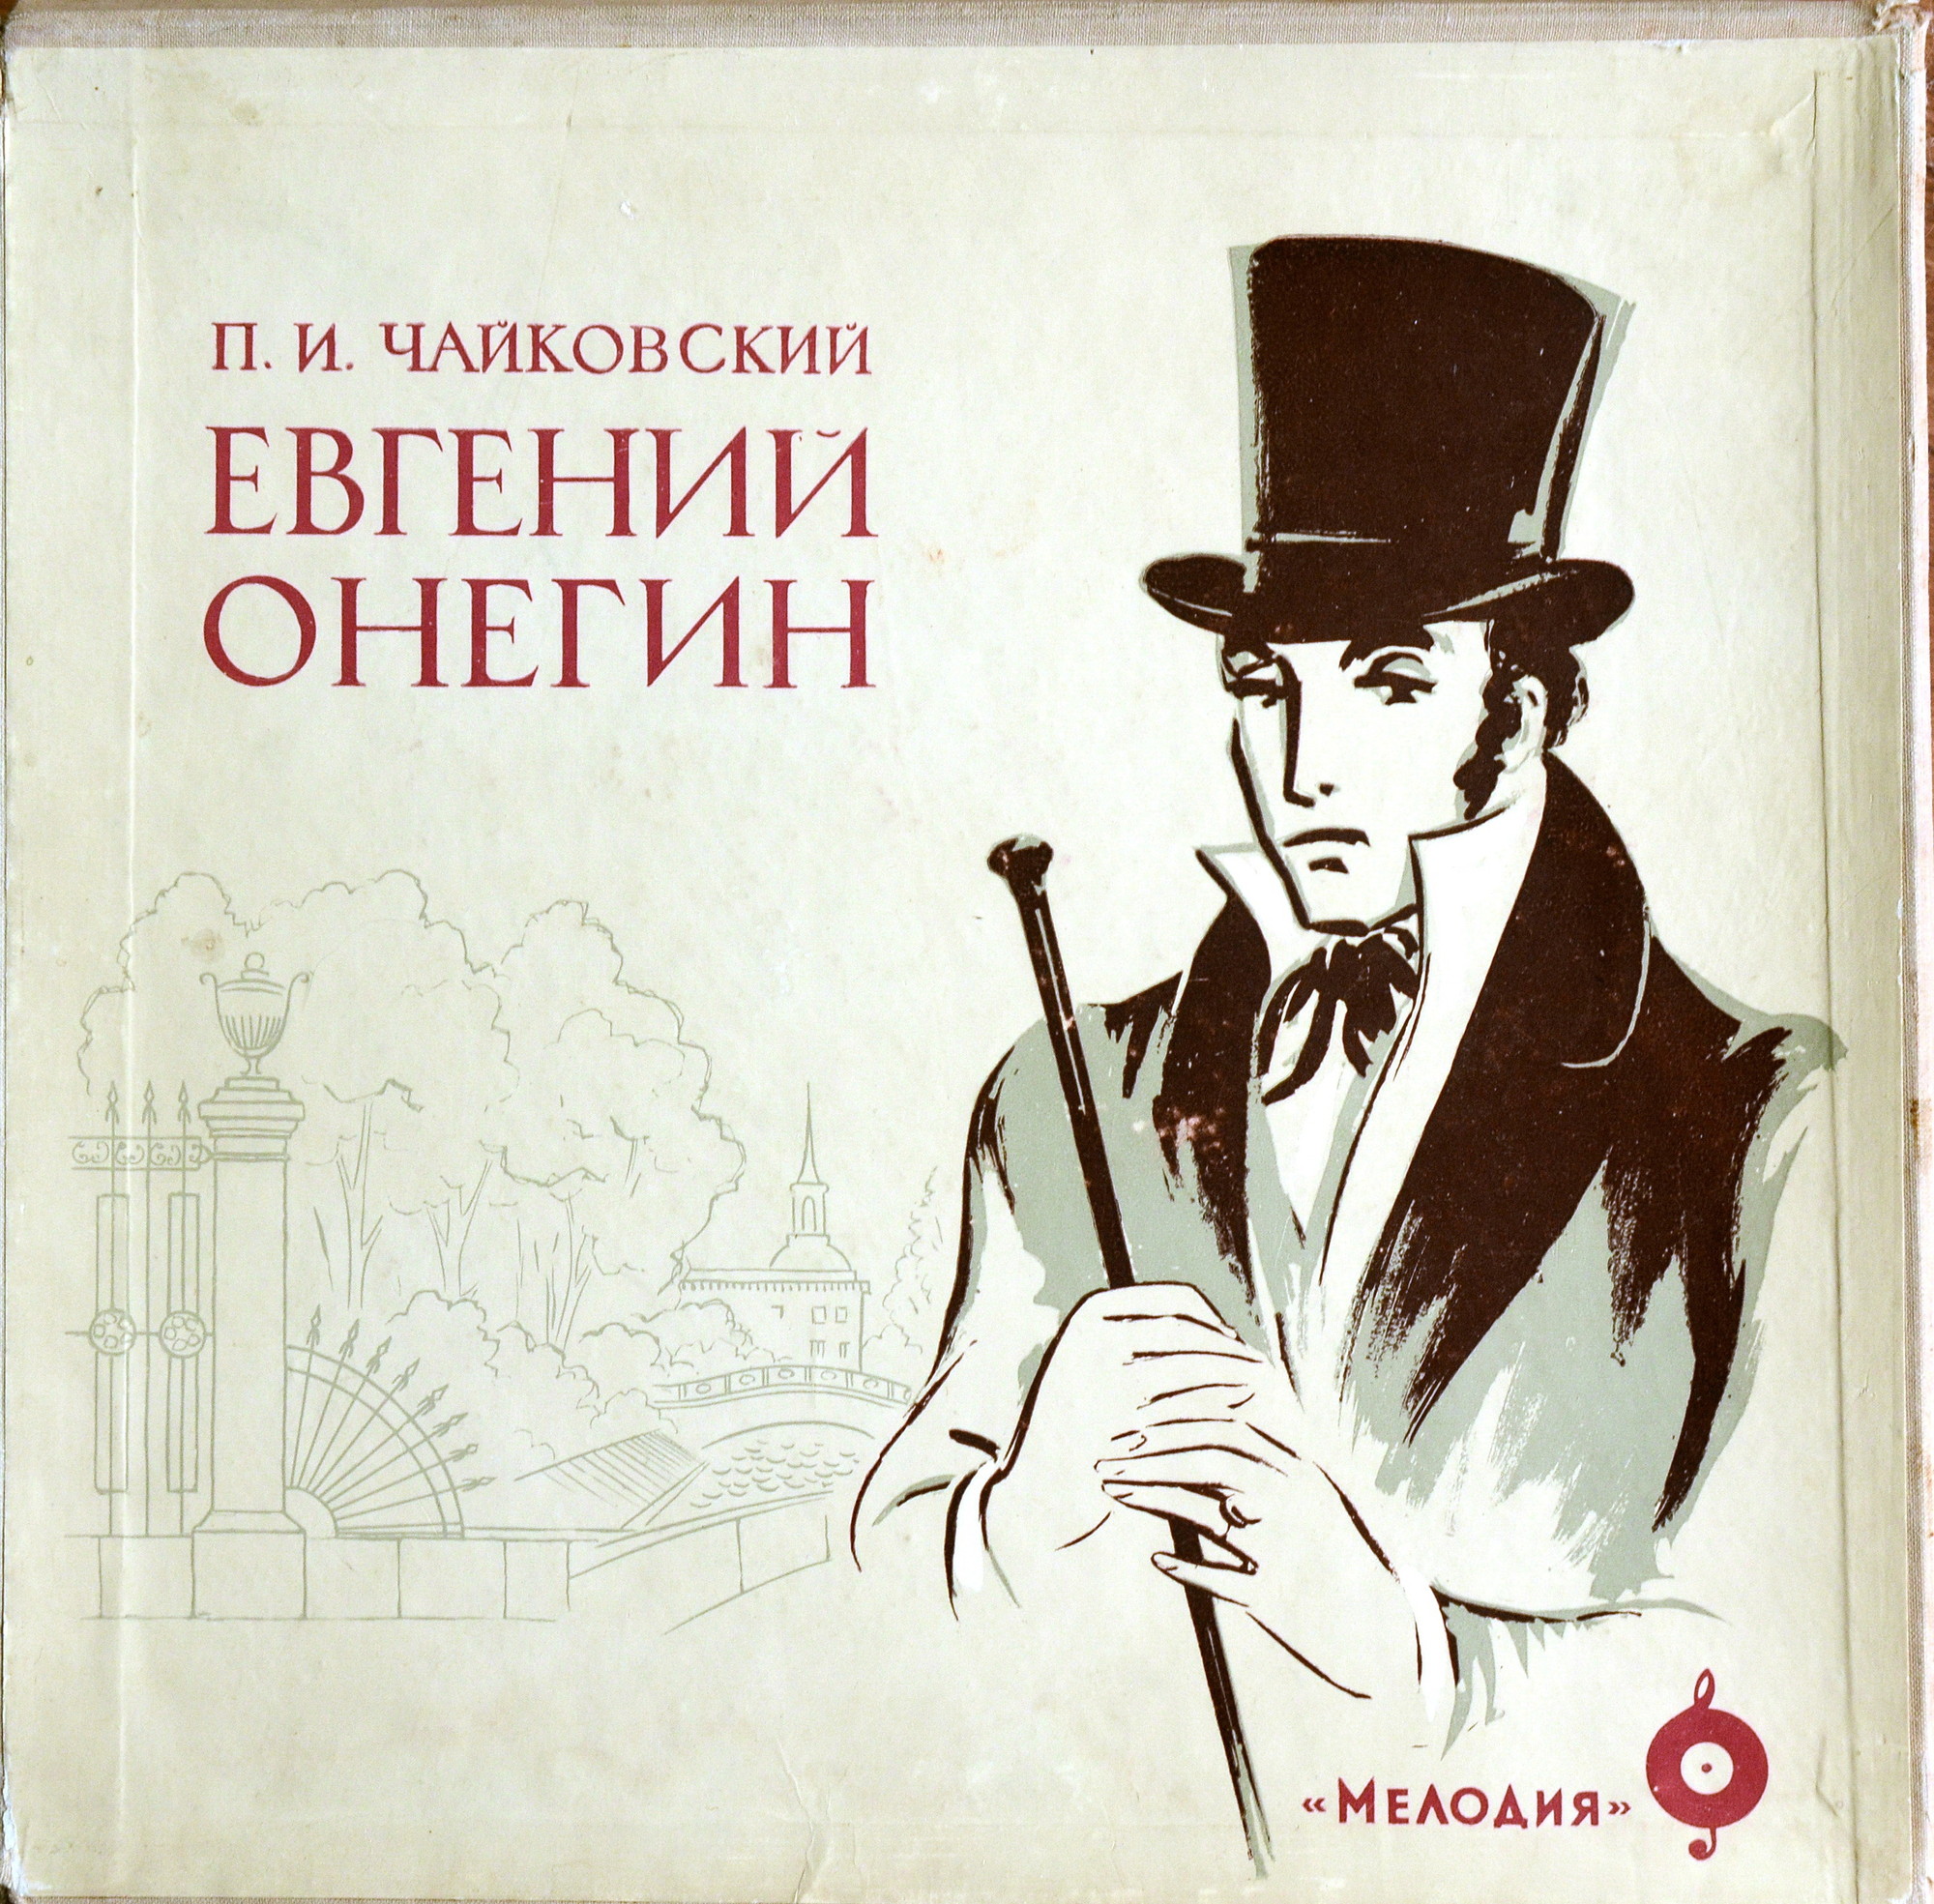 П. ЧАЙКОВСКИЙ (1840–1893) «Евгений Онегин»,  опера в 3-х д. (7 картинах) — Б. Хайкин